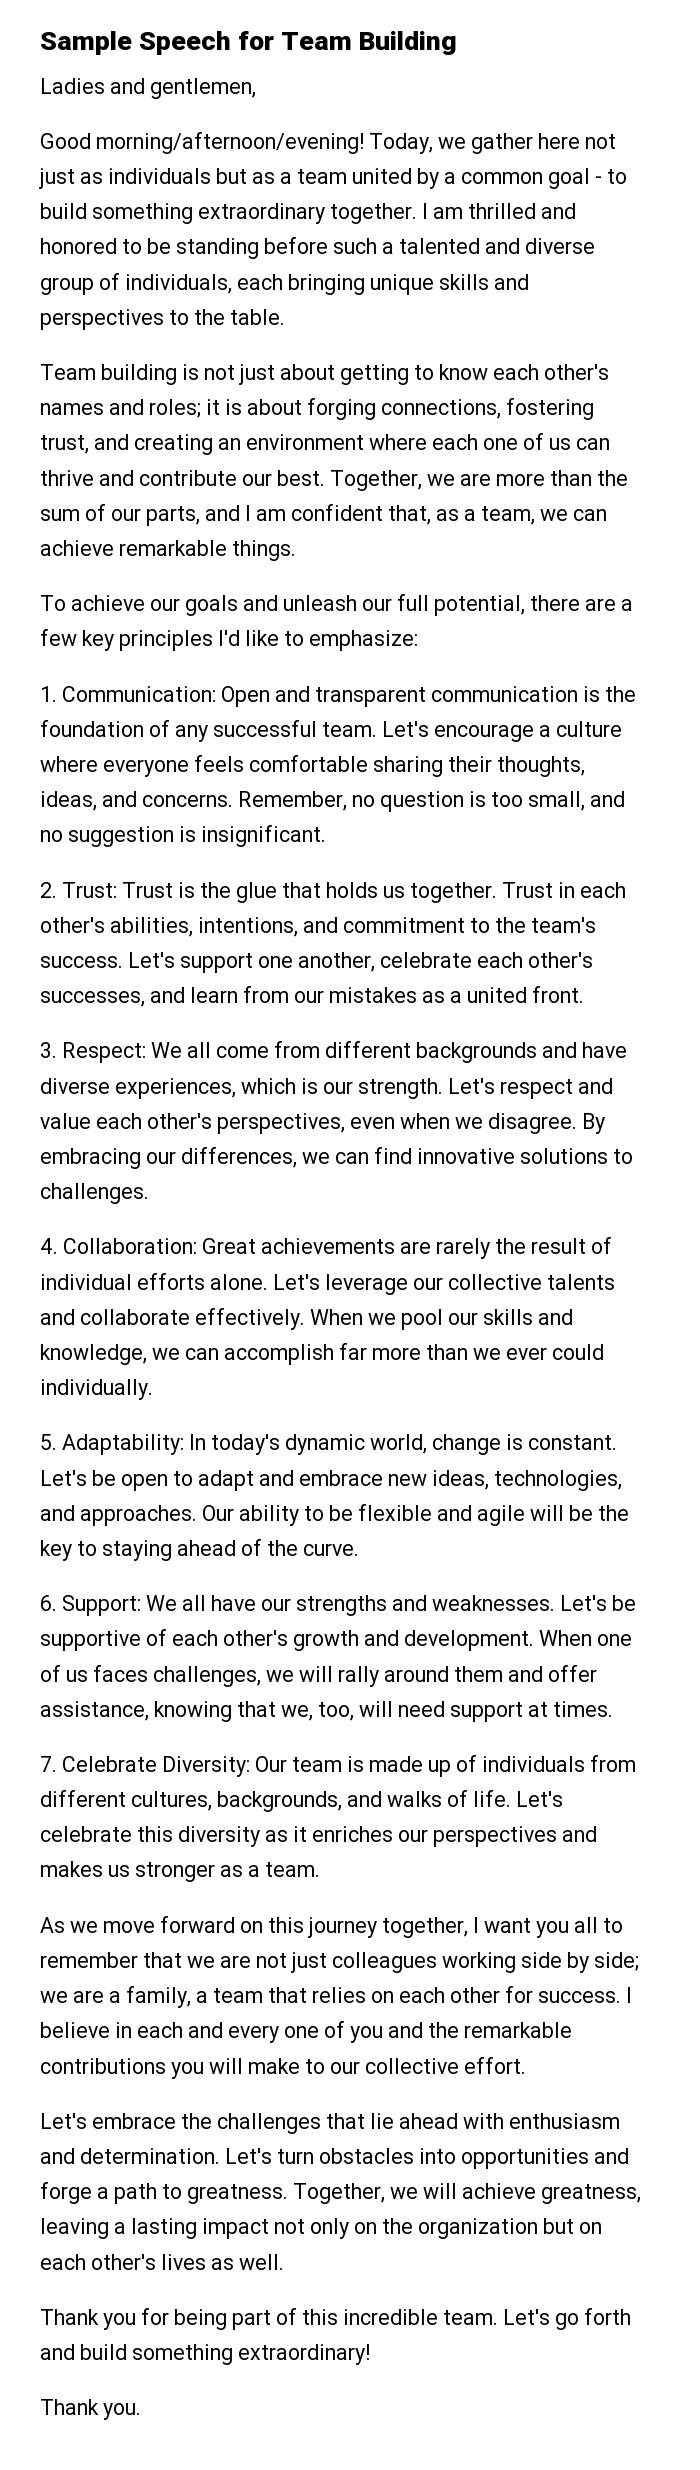 Sample Speech for Team Building